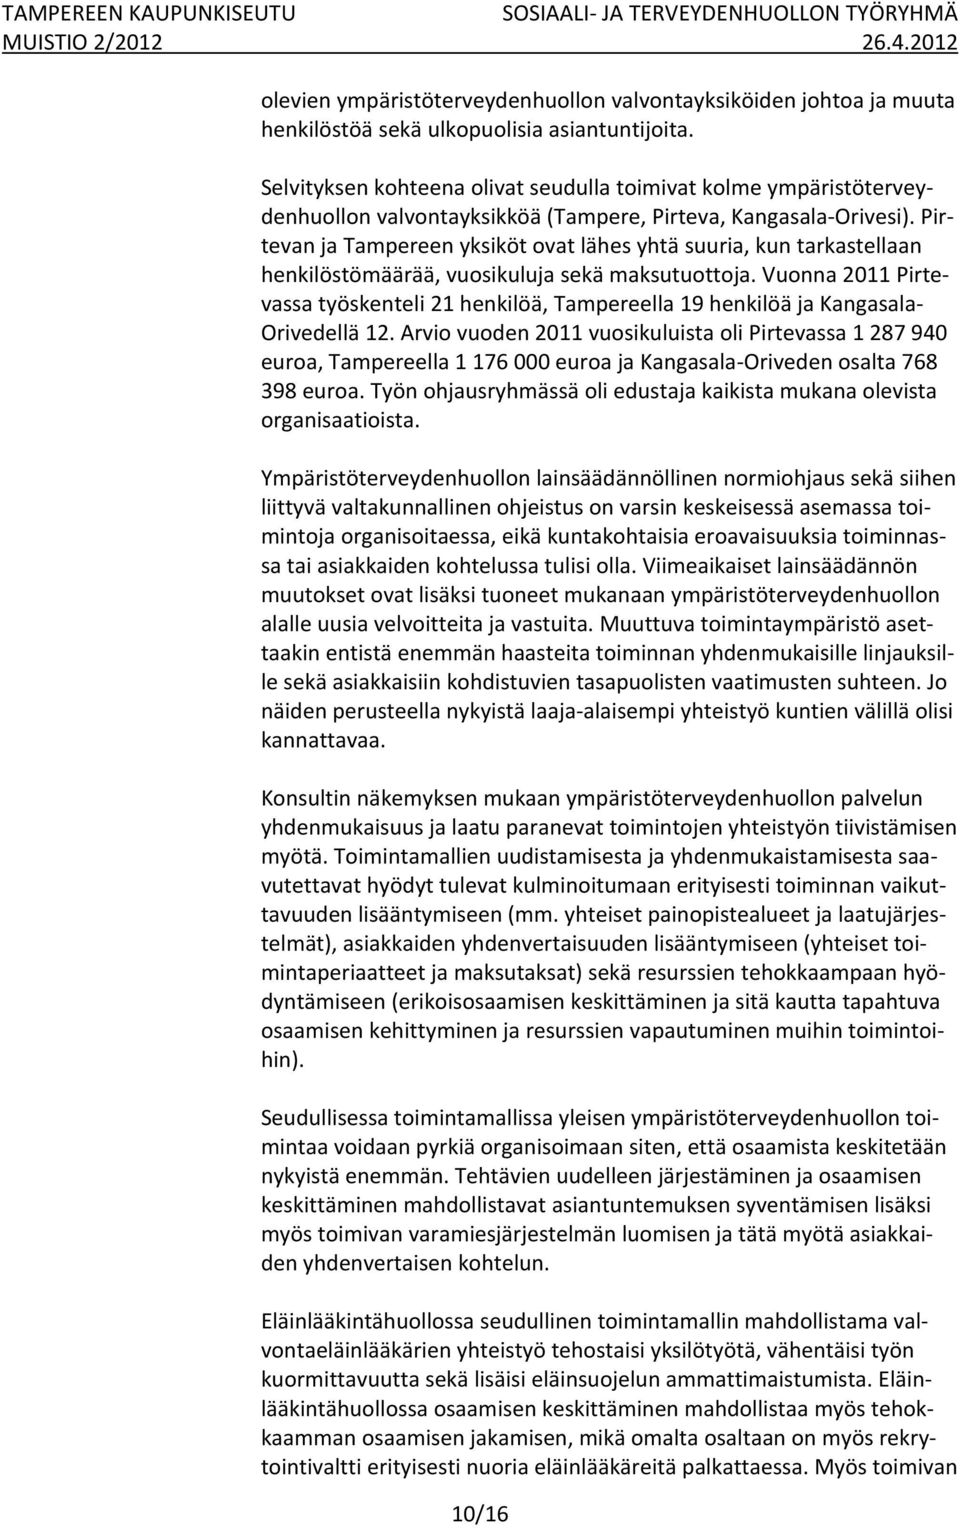 Pirtevan ja Tampereen yksiköt ovat lähes yhtä suuria, kun tarkastellaan henkilöstömäärää, vuosikuluja sekä maksutuottoja.